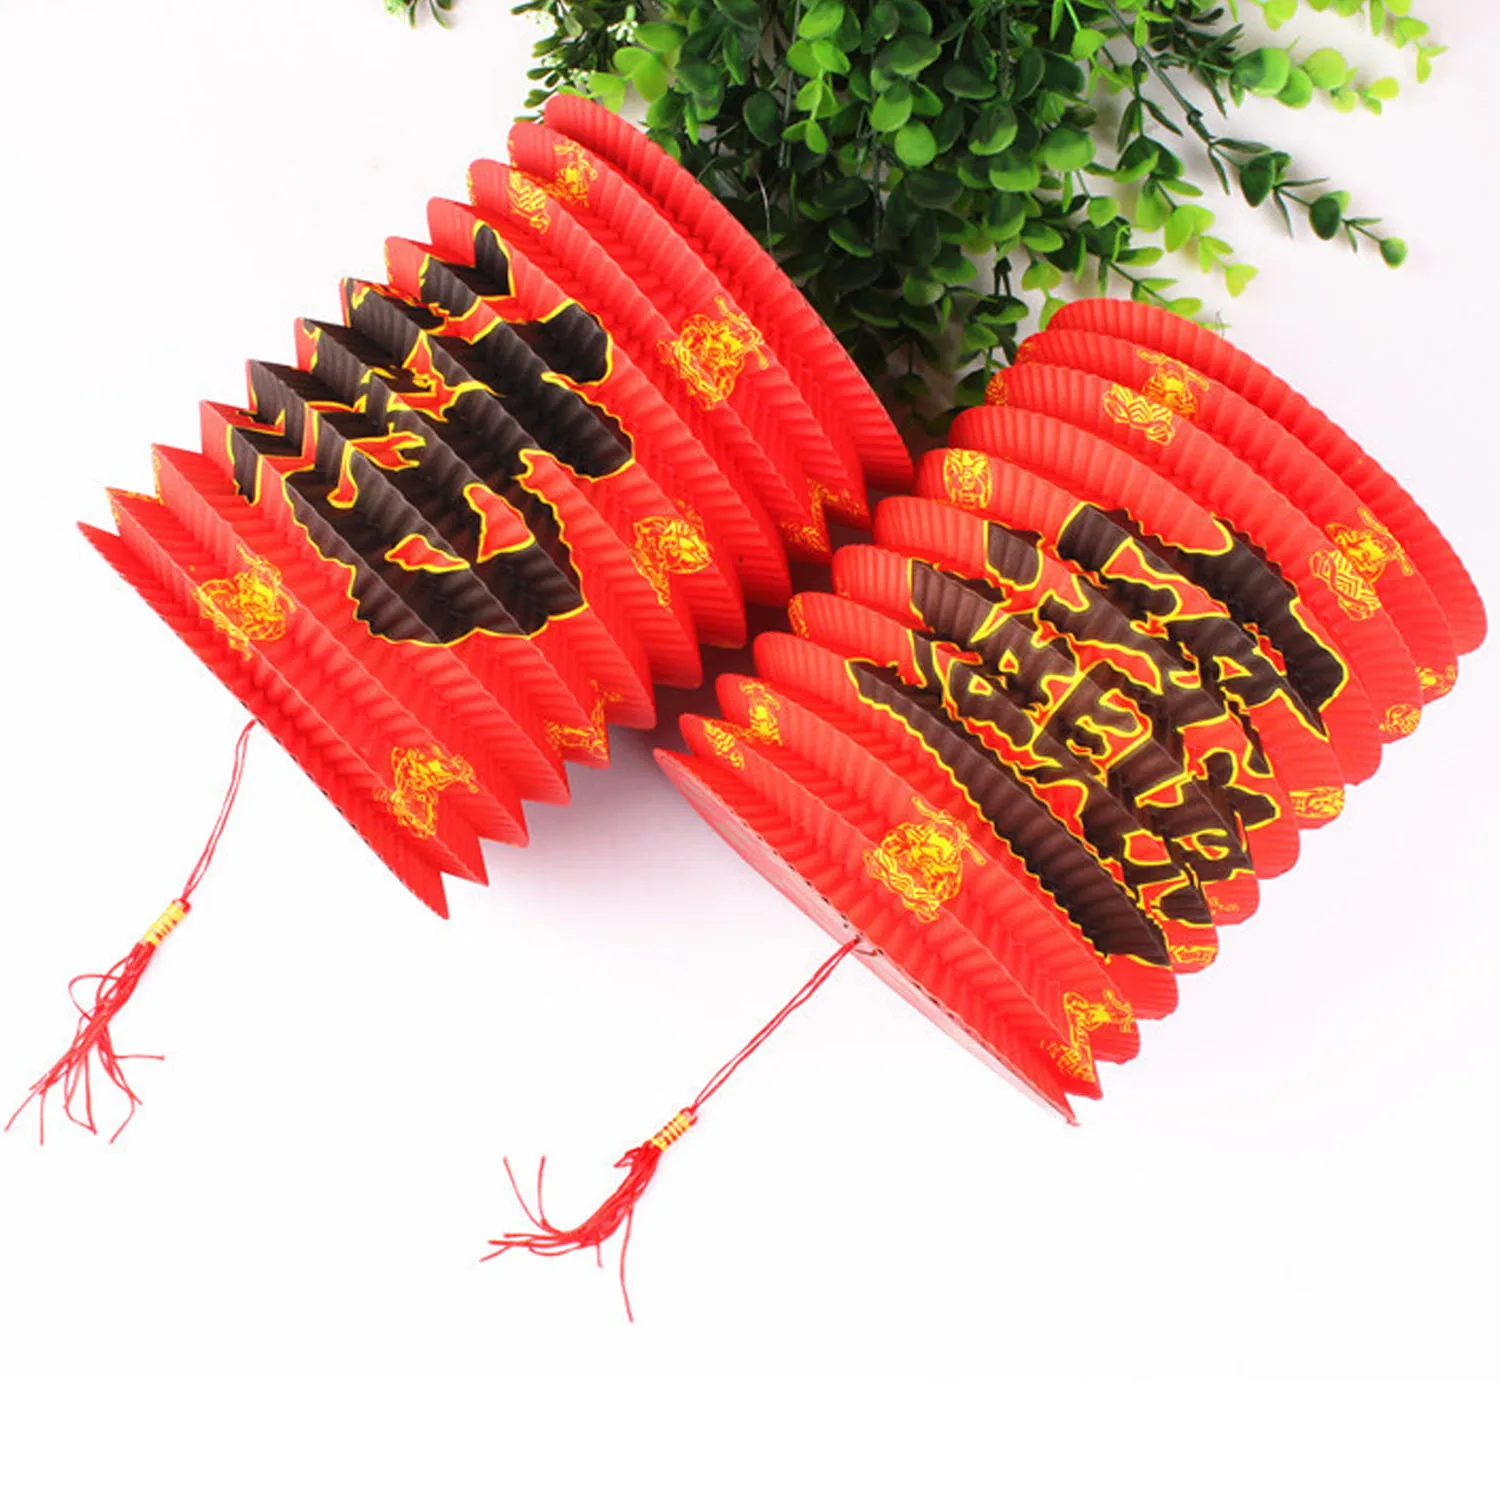 Behogar 10 PCS Katlanabilir El Iyi Servet Kırmızı Kağıt Fenerler için Çin Yeni Yıl Bahar Festivali Parti Ev Dekorasyon